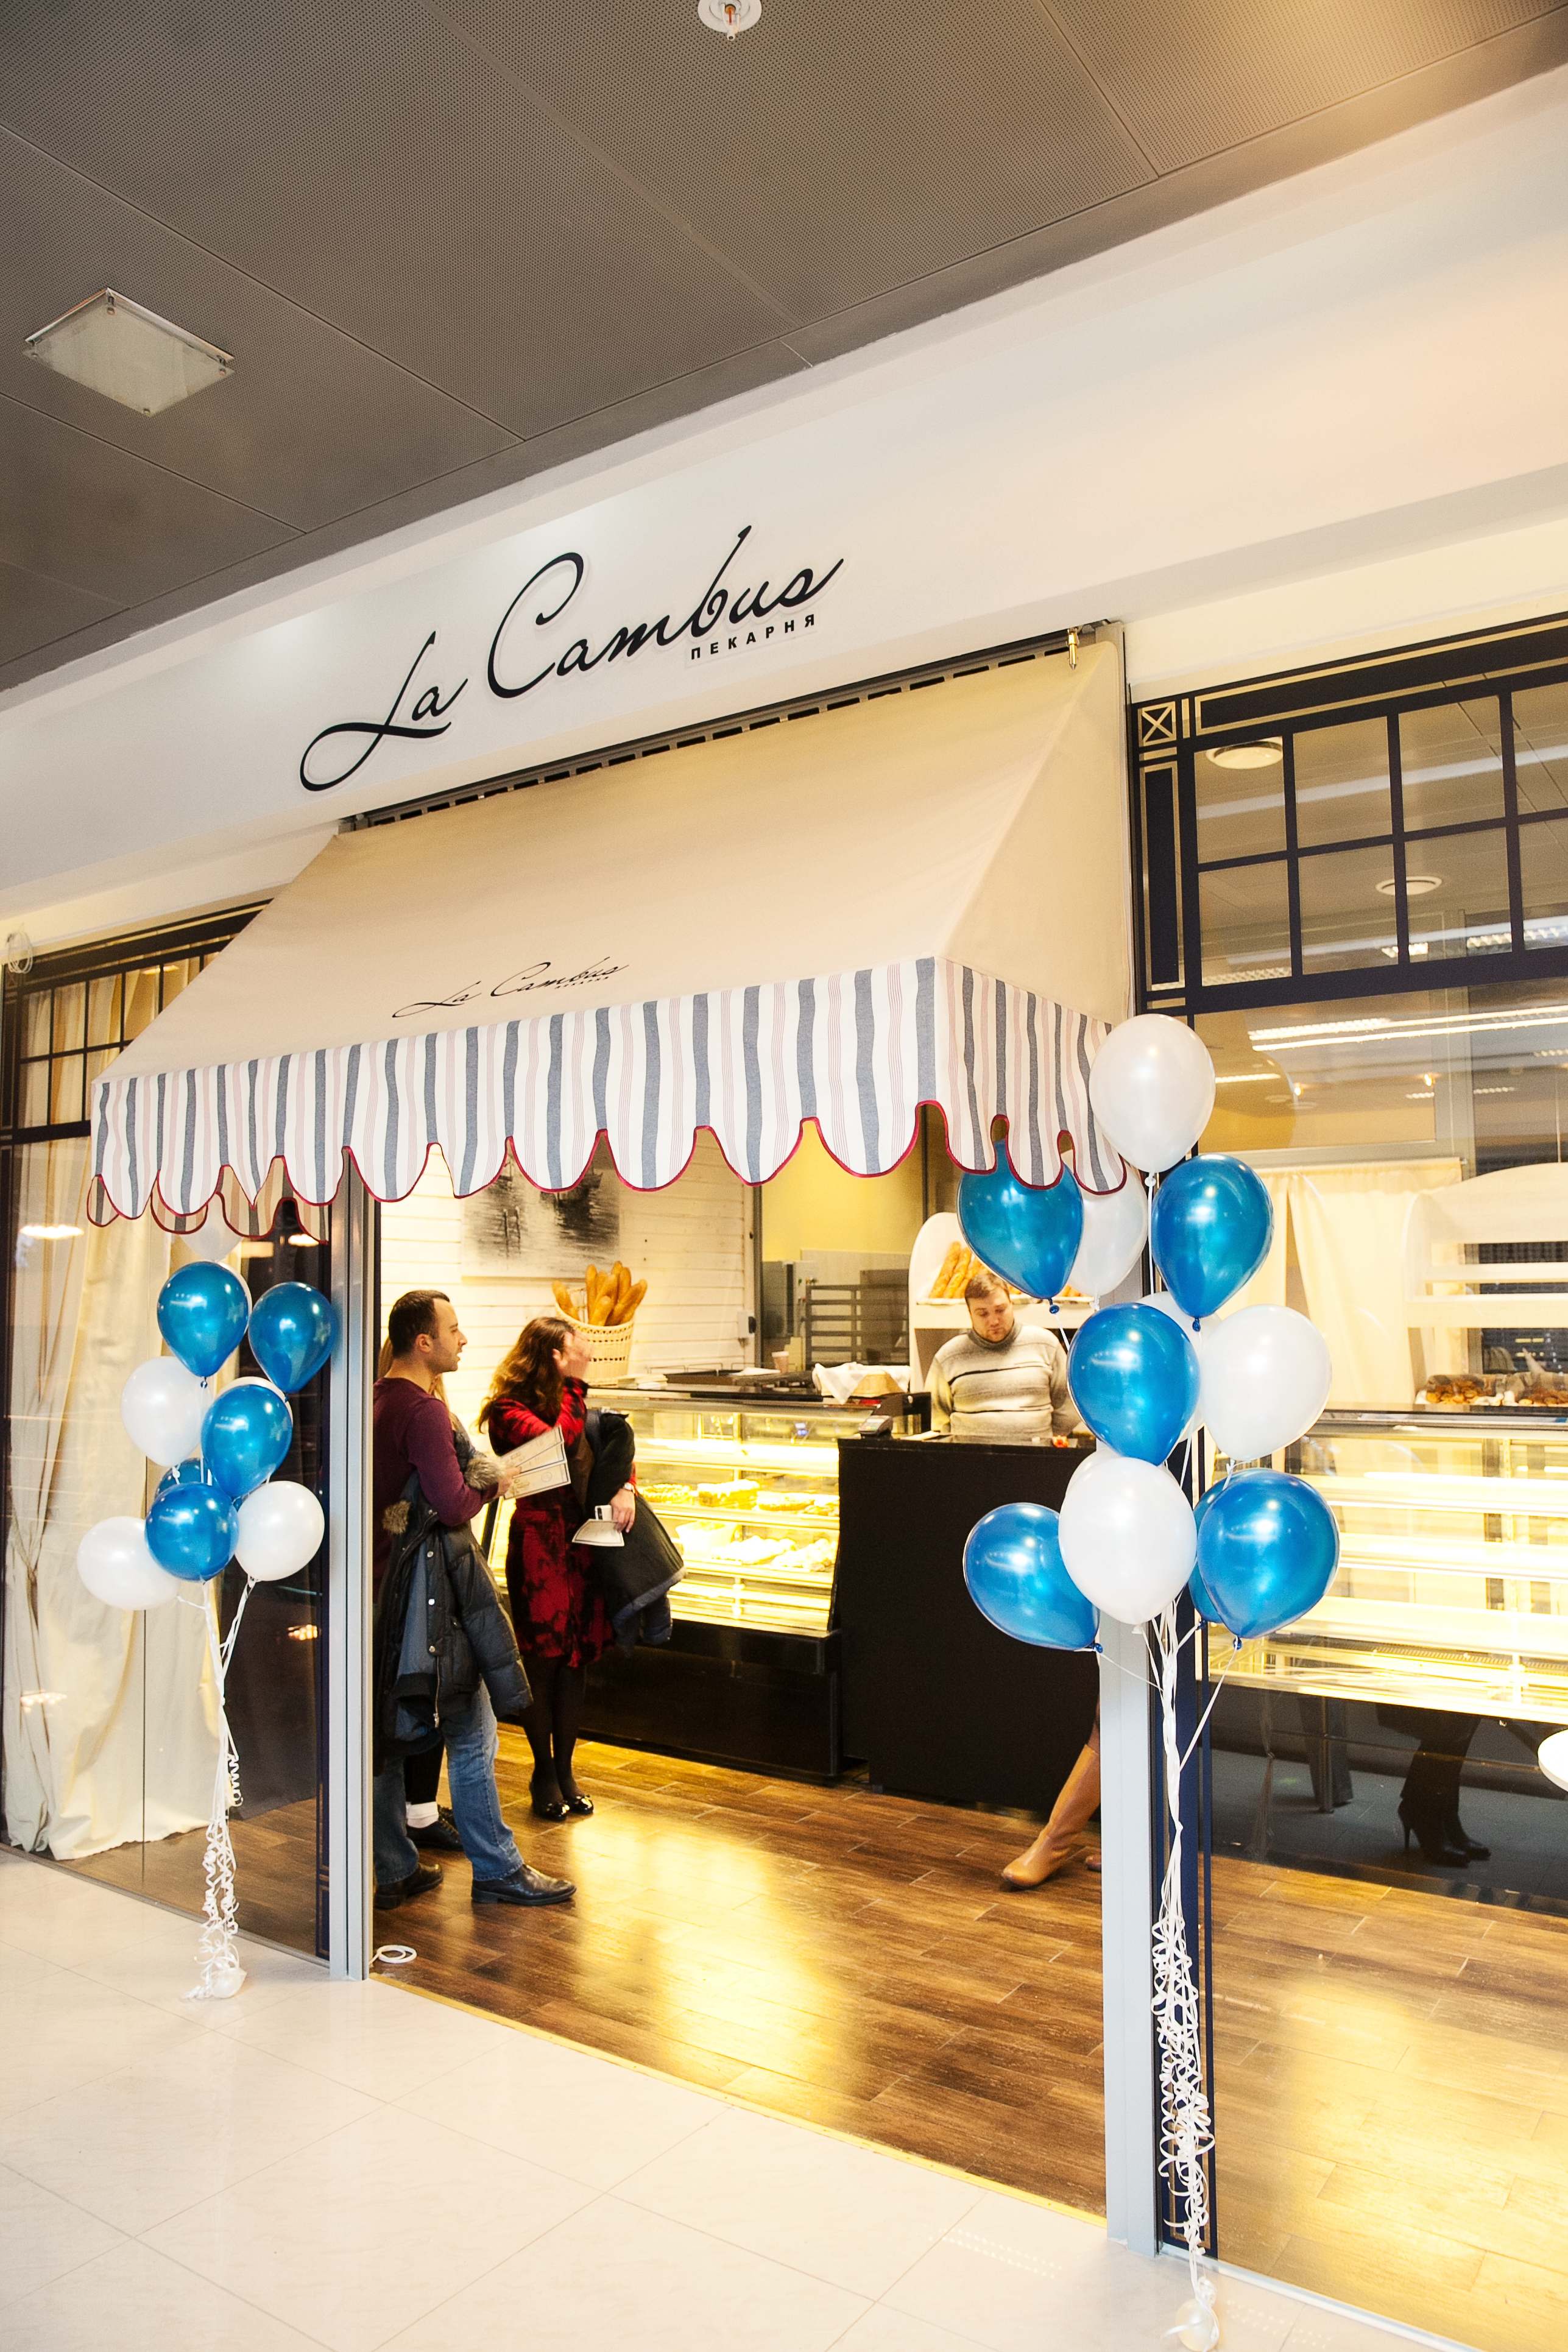 Новая калининградская пекарня La Cambus в день своего открытия 18 декабря пригласила 20 детей с ограничениями здоровья к себе на праздник